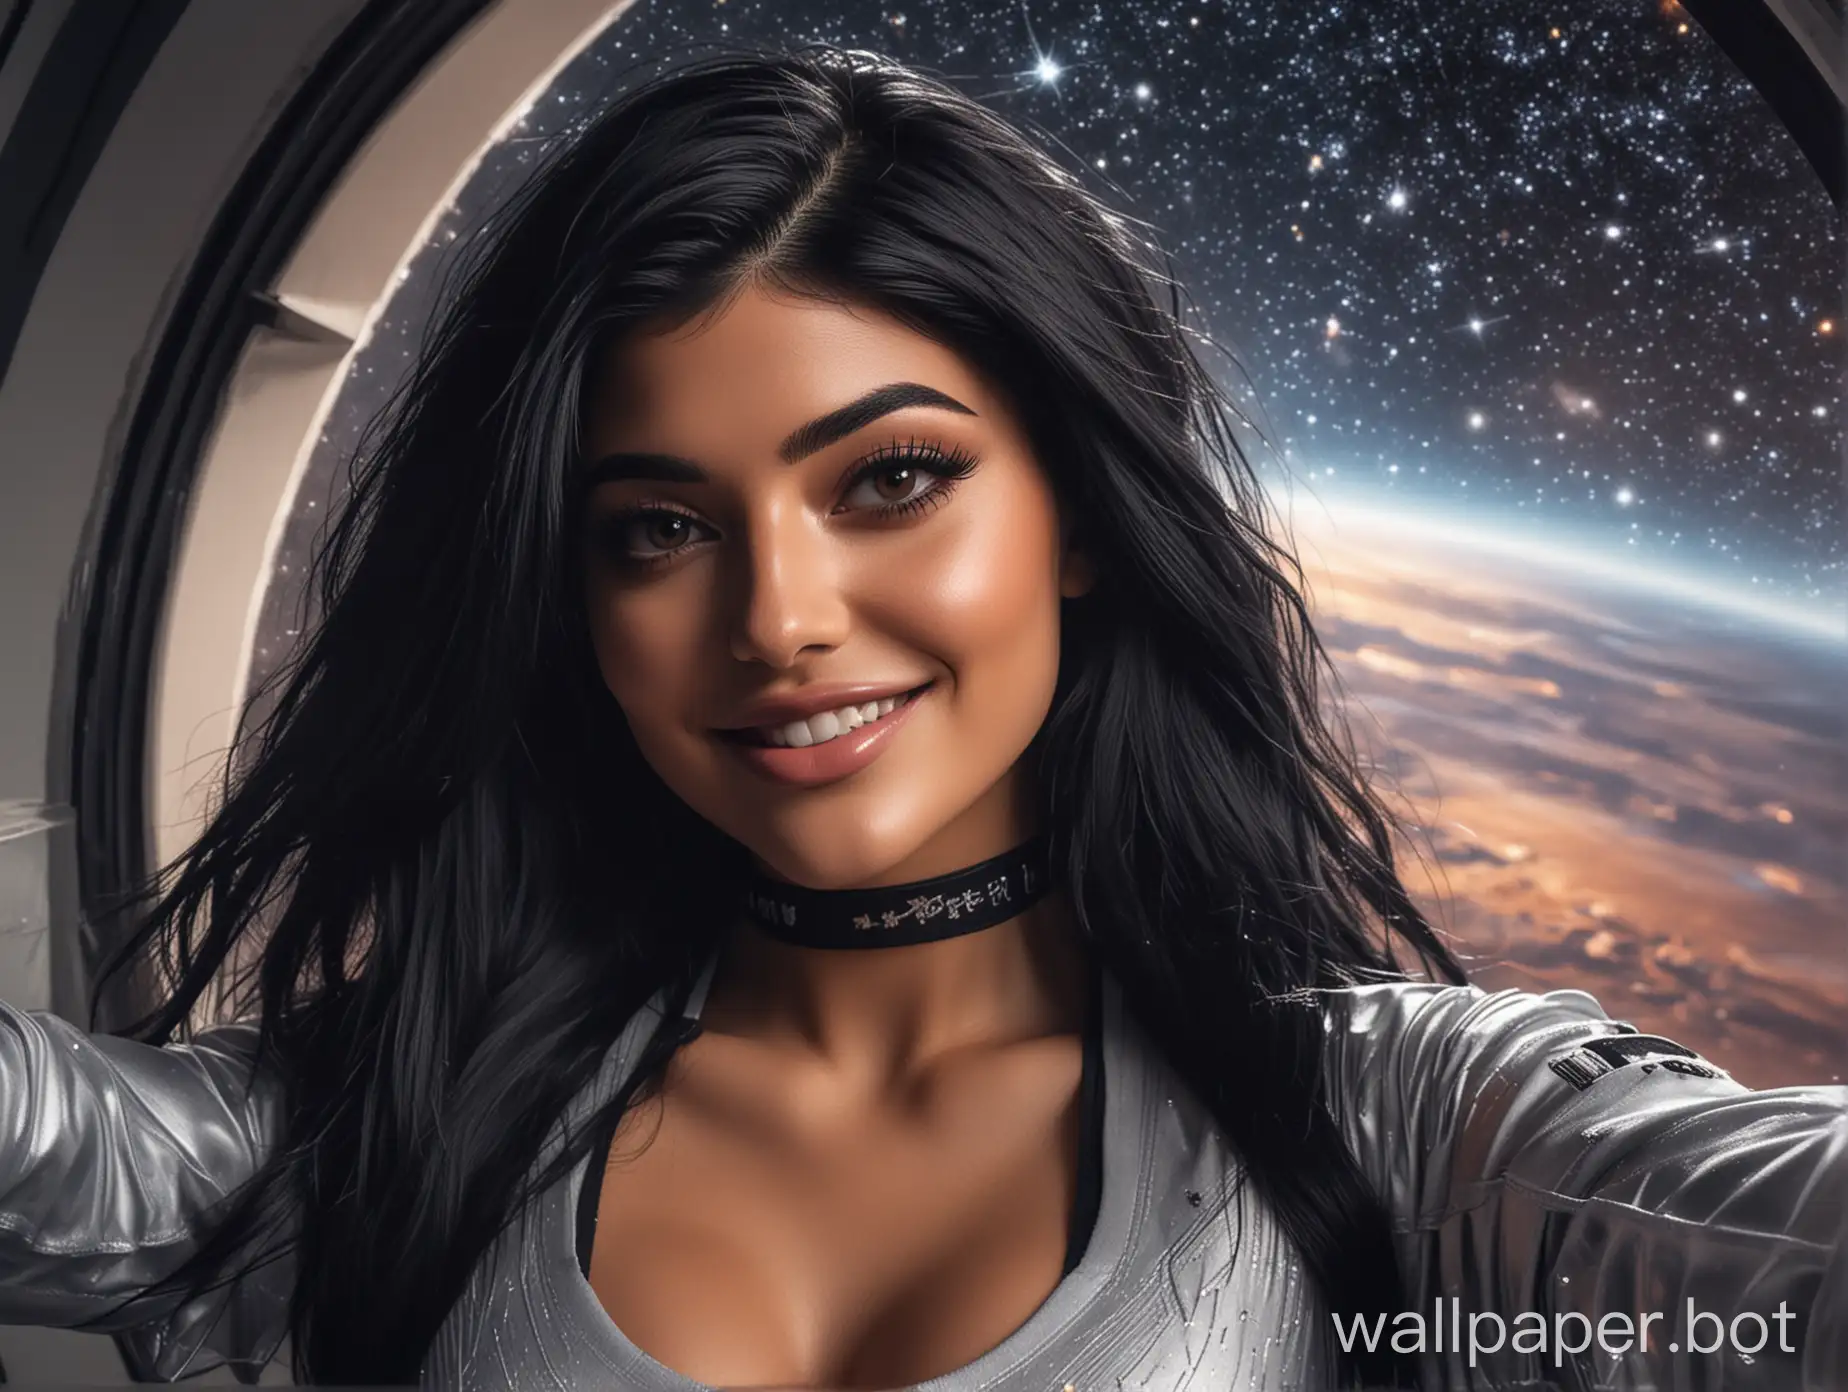 Futuristic-Selfie-CyberClad-Kylie-Jenner-Lookalike-with-Stellar-Backdrop